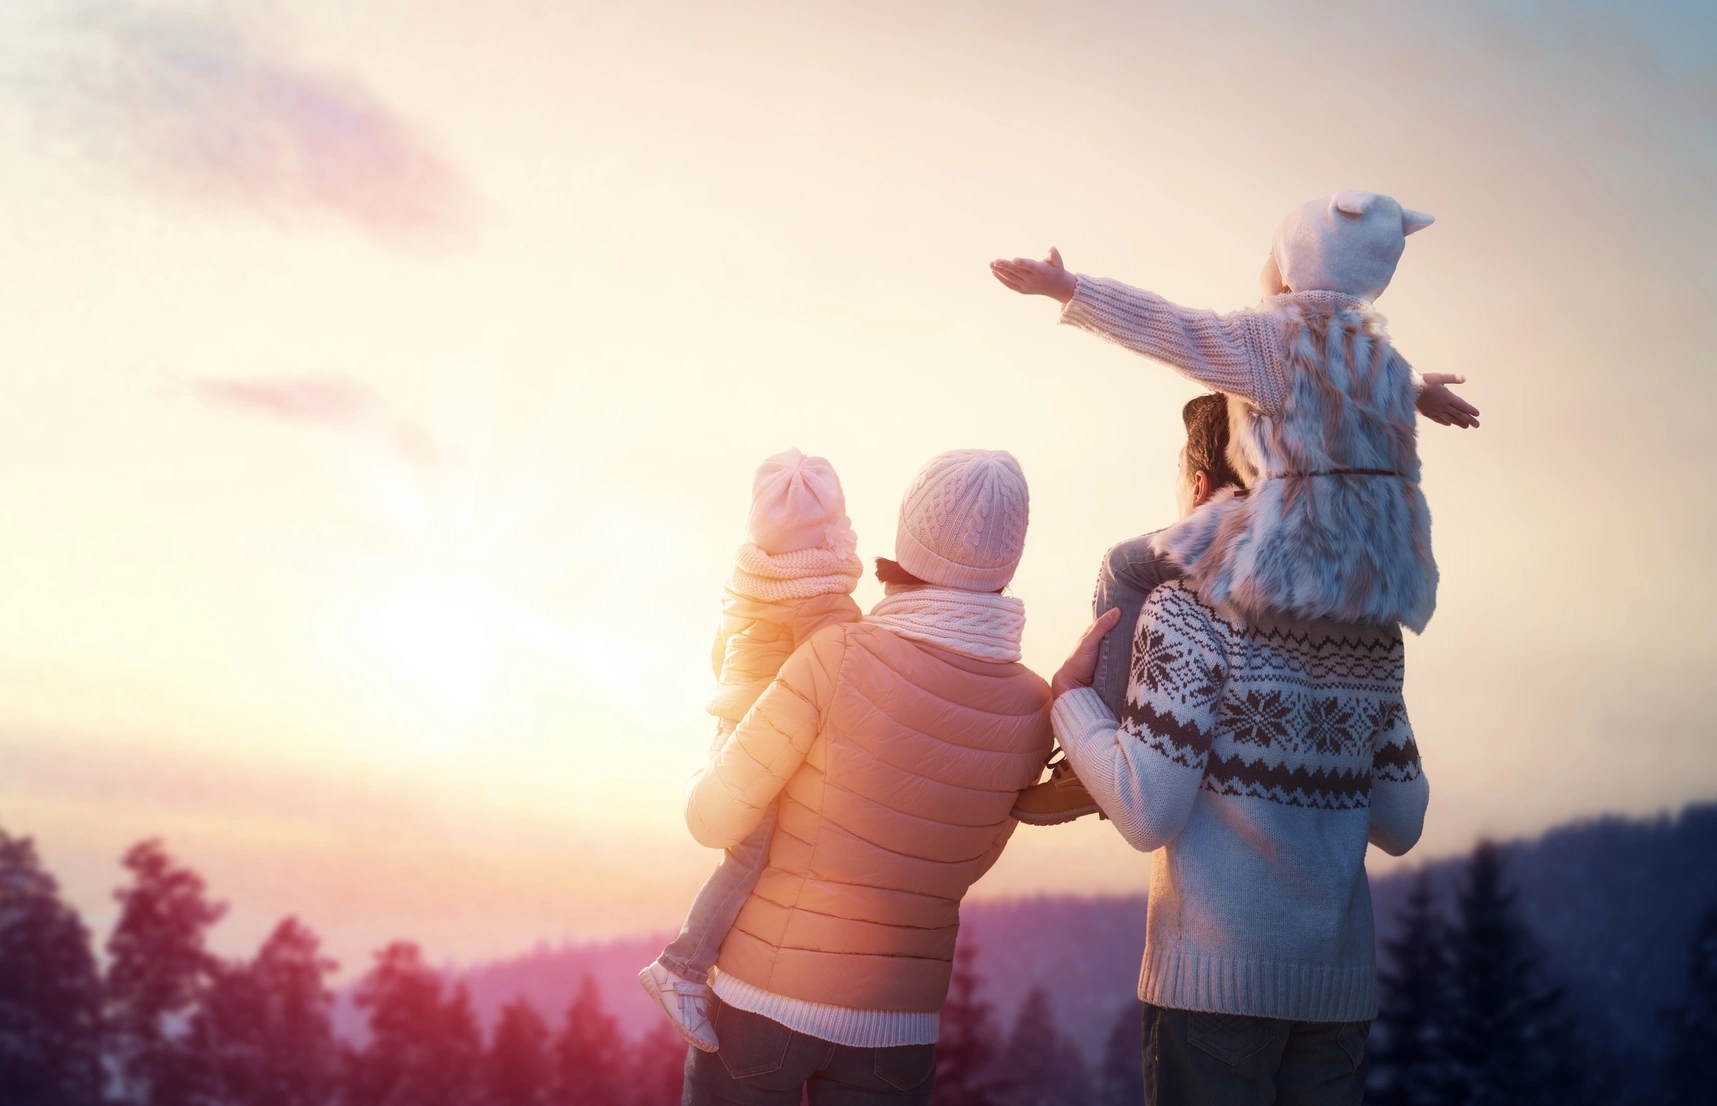 Jak witamina D wpływa na organizm? Rodzice z dwójką dzieci podziwiają zimową scenerię w górach.